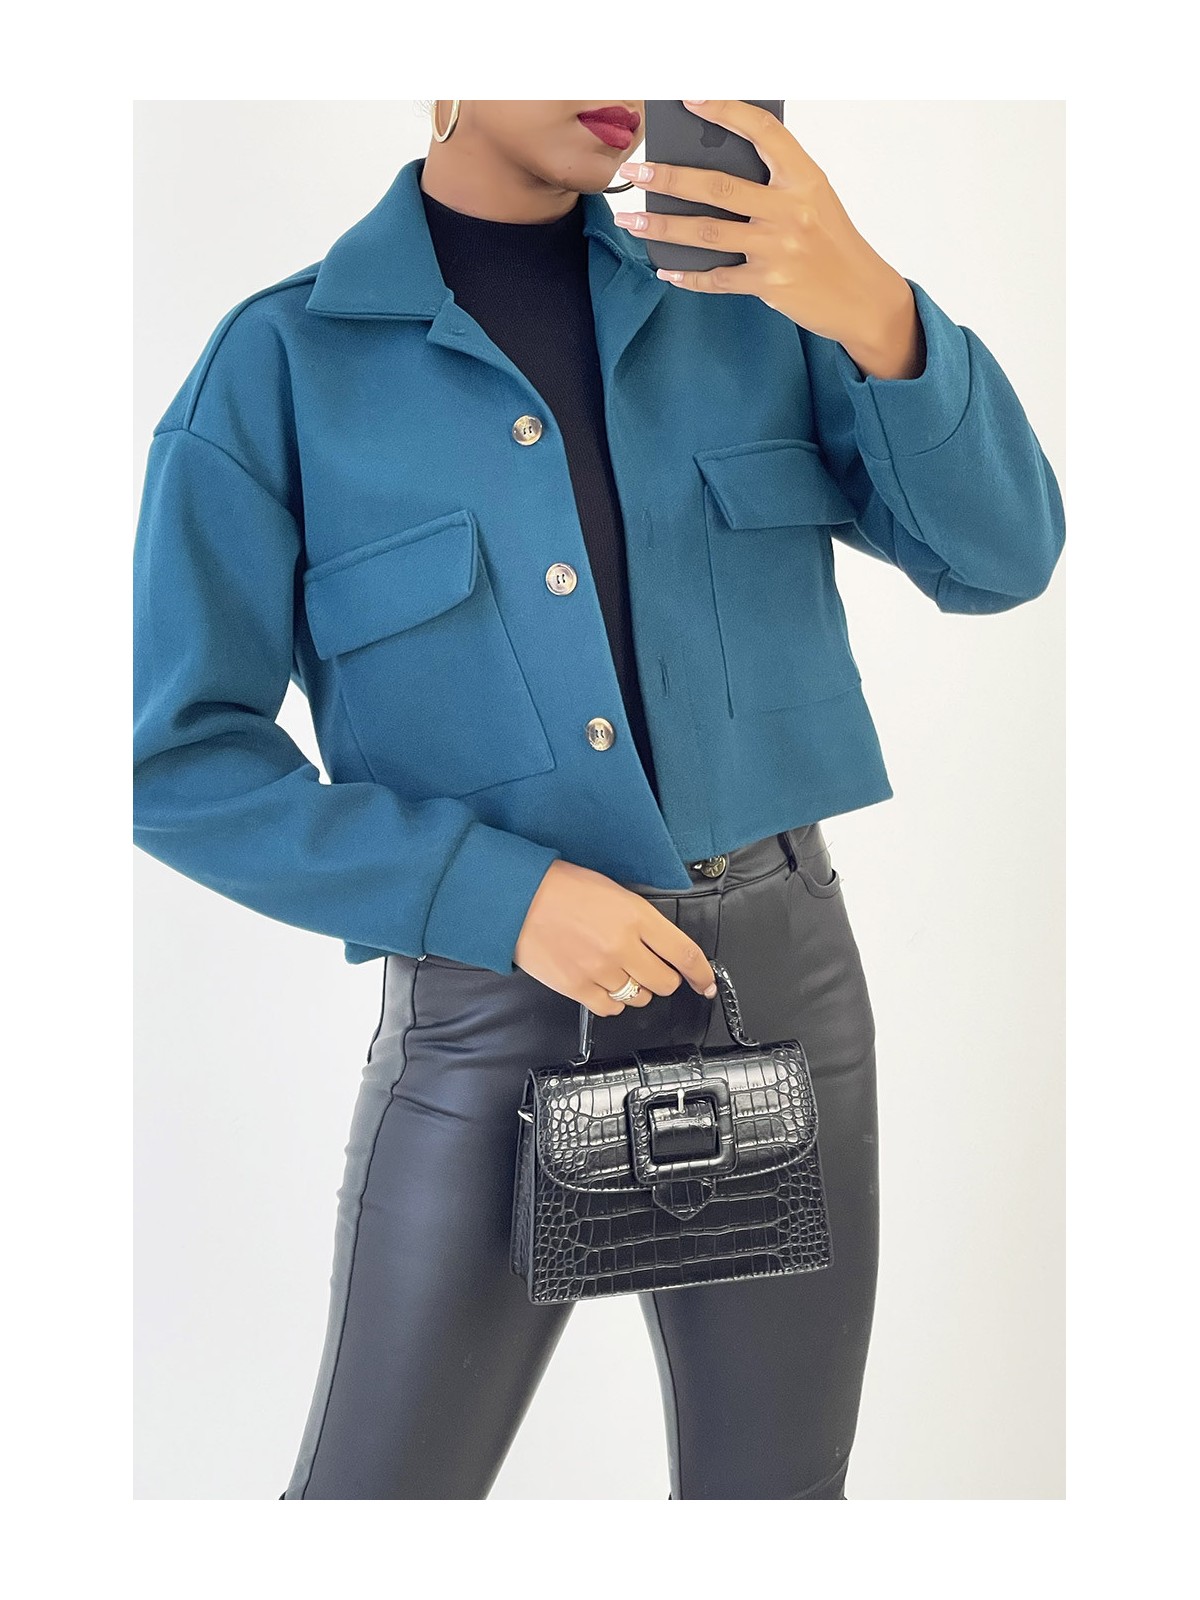 Veste courte très fashion en bleue avec poches au buste - 2